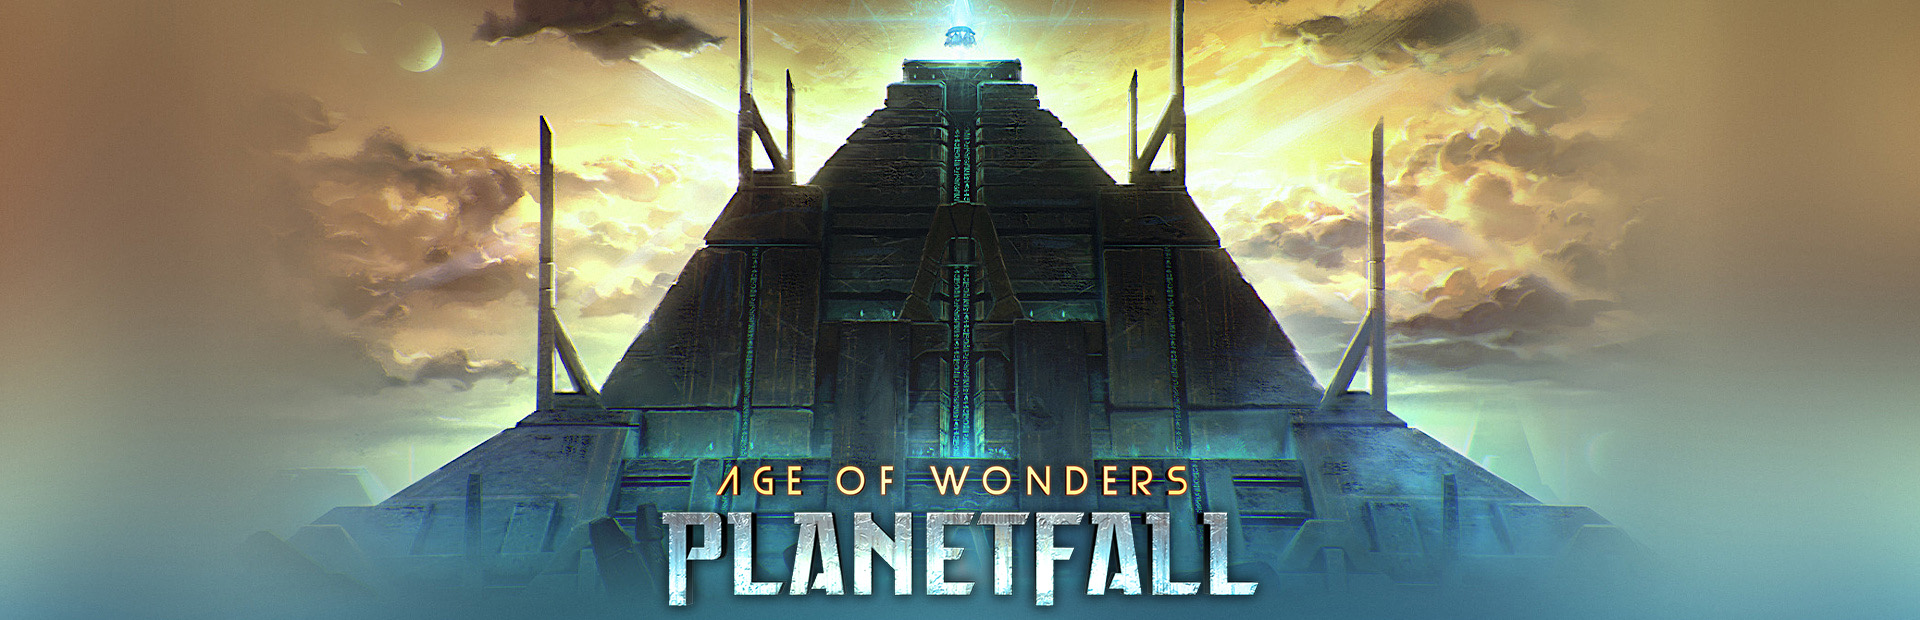 دانلود بازی Age of Wonders: Planetfall برای کامپیوتر | گیمباتو